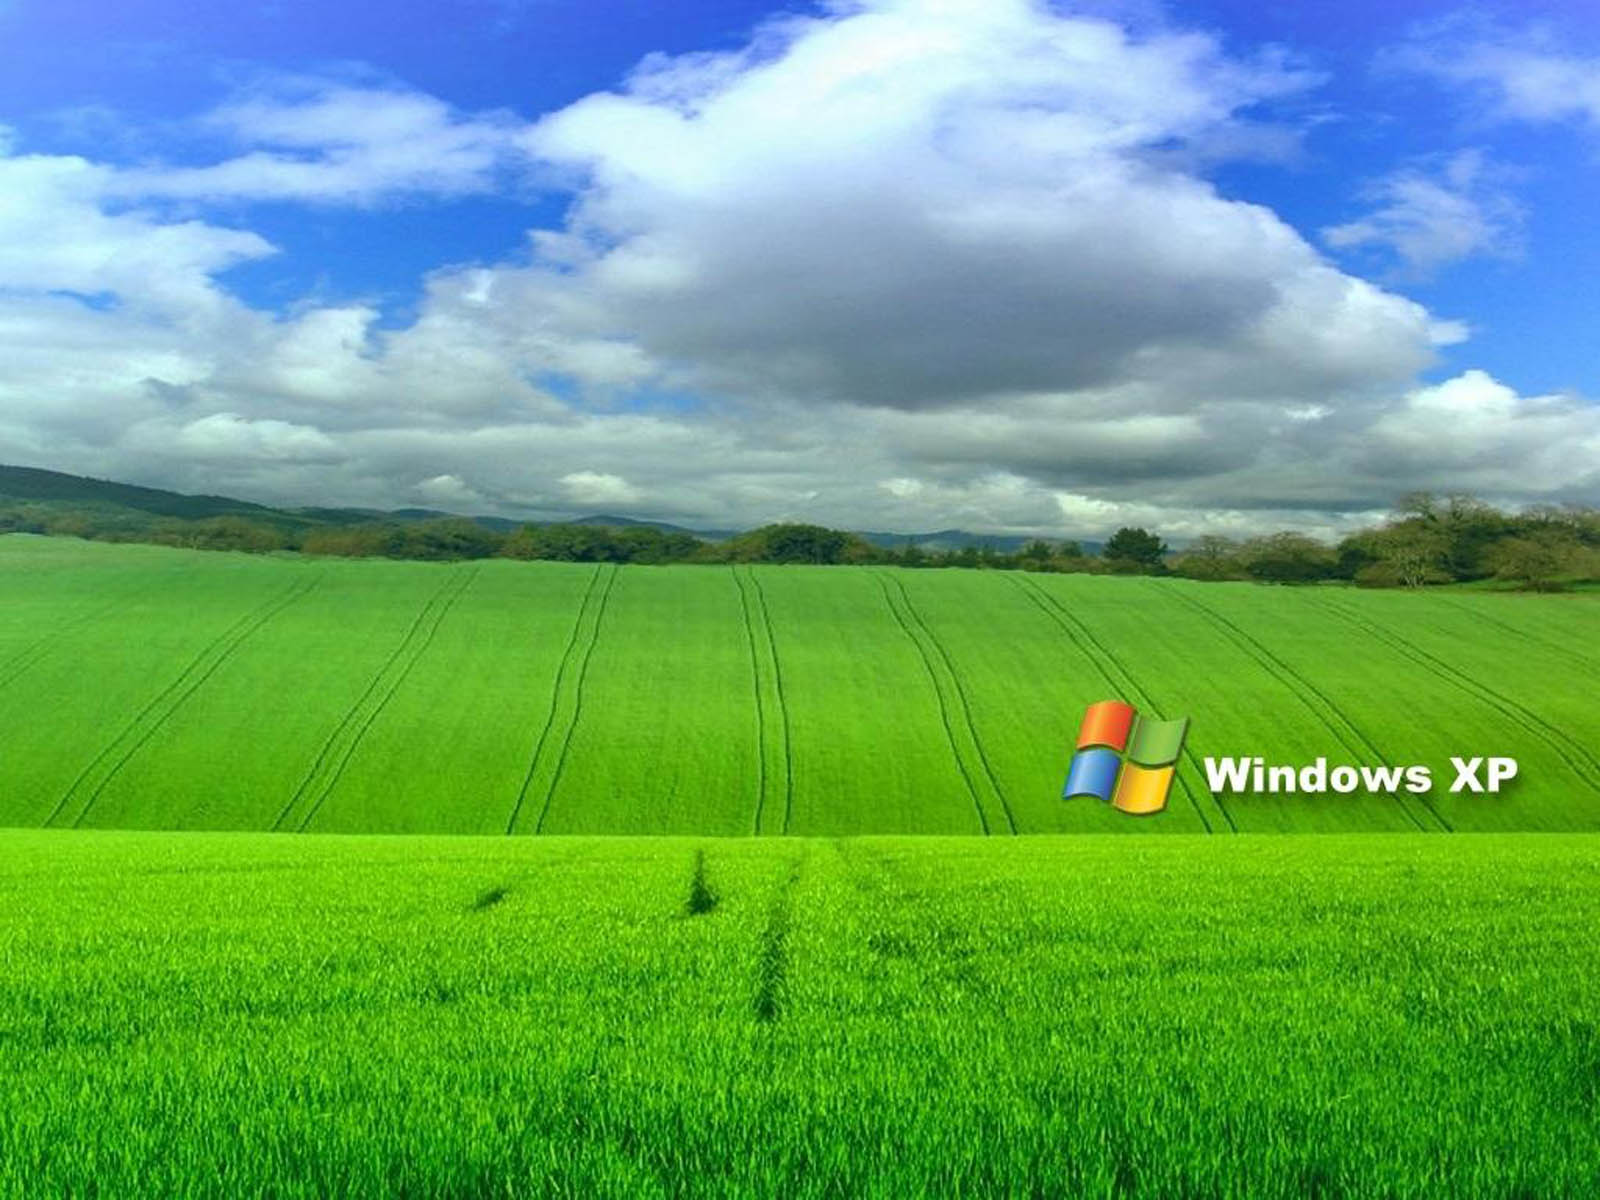 Bạn thường xuyên phải ngồi để làm việc trên Desktop Windows XP? Làm thế nào để làm cho góc làm việc của bạn trở nên thú vị hơn? Chọn các hình nền phù hợp với Desktop Windows XP của bạn để làm việc hiệu quả nhưng không kém phần thú vị.